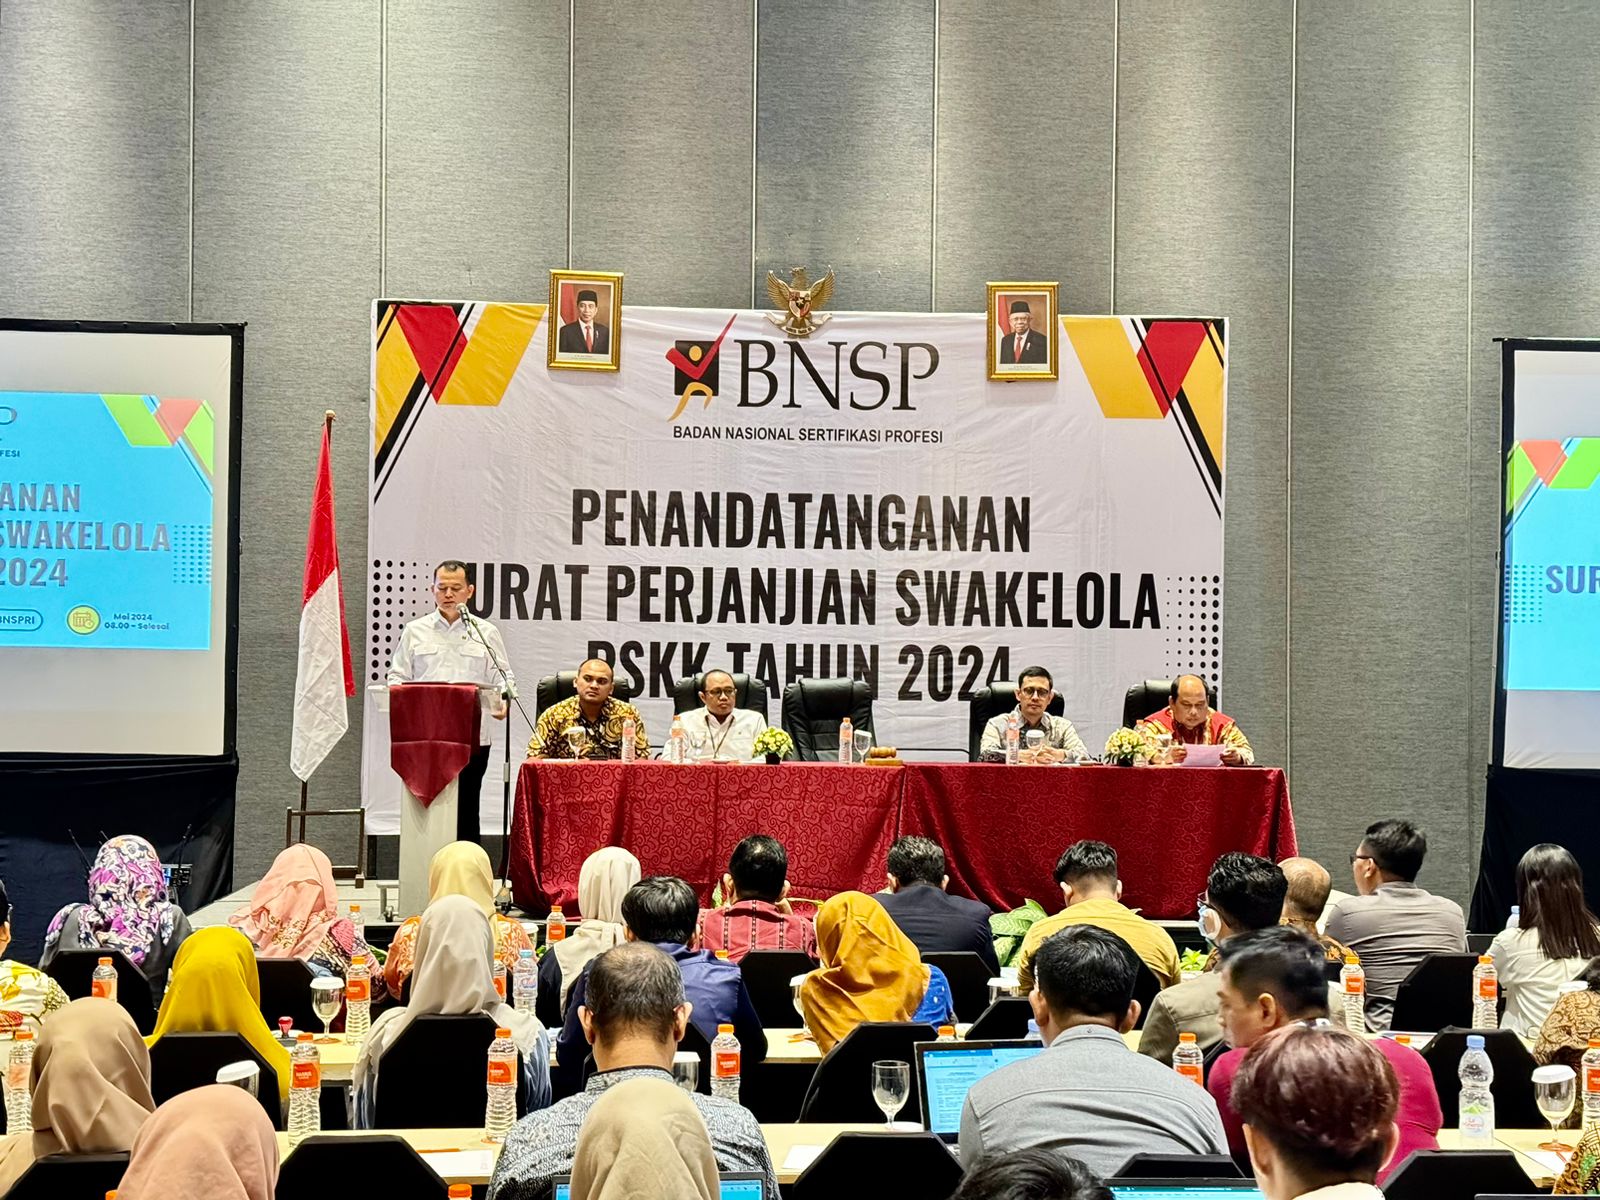 Foto: Badan Nasional Sertifikasi Profesi (BNSP) melaksanakan penandatanganan Surat Perjanjian Swakelola Program Sertifikasi Kompetensi Kerja (PSKK) di Hotel Harris Gubeng, Surabaya, pada Senin, 20 Mei 2024. (Doc.BNSP)